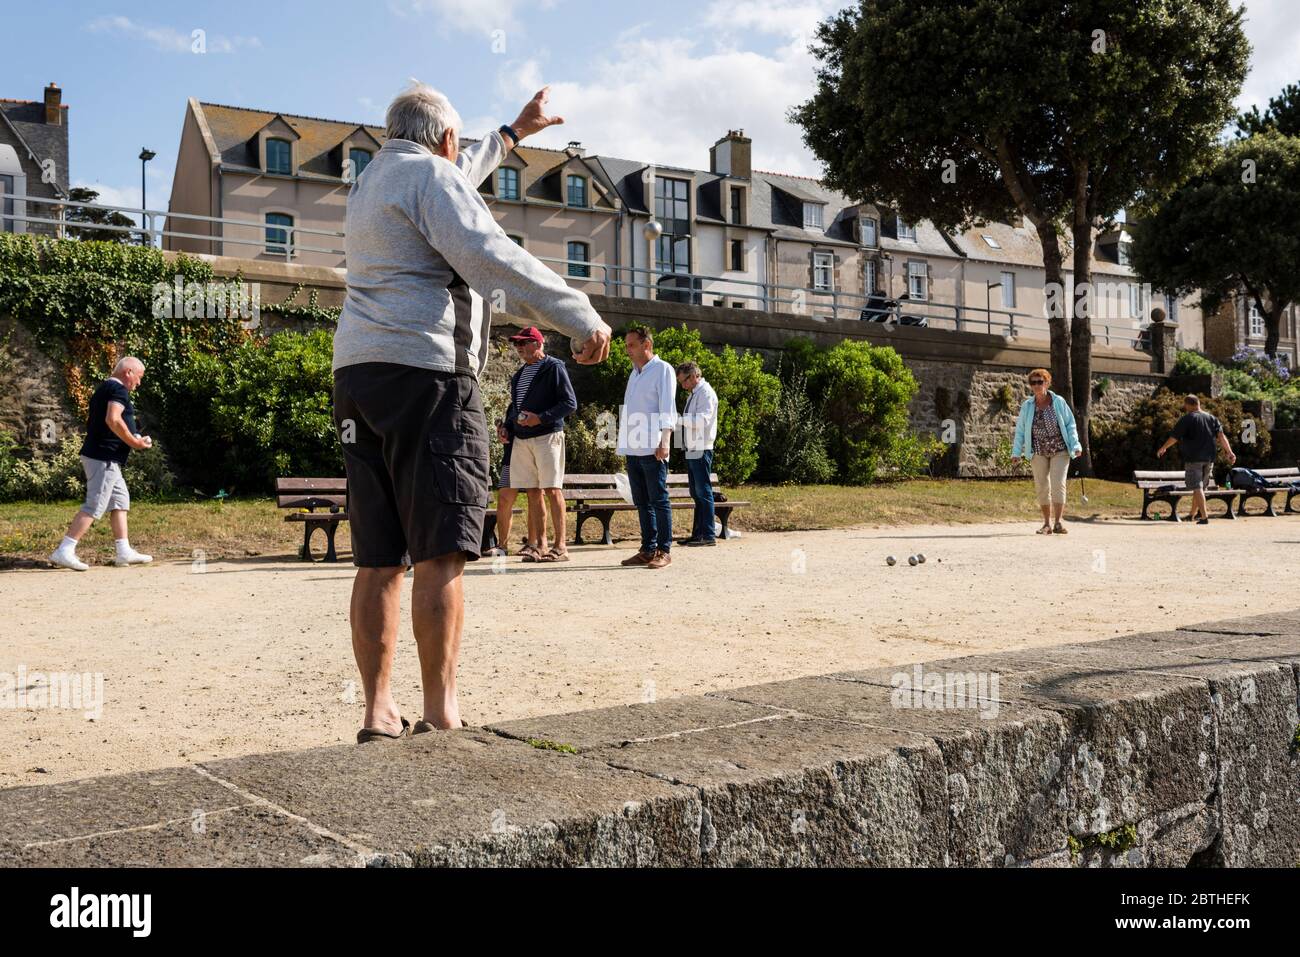 Les gens jouant des pétanques, St Malo, Bretagne, France Banque D'Images